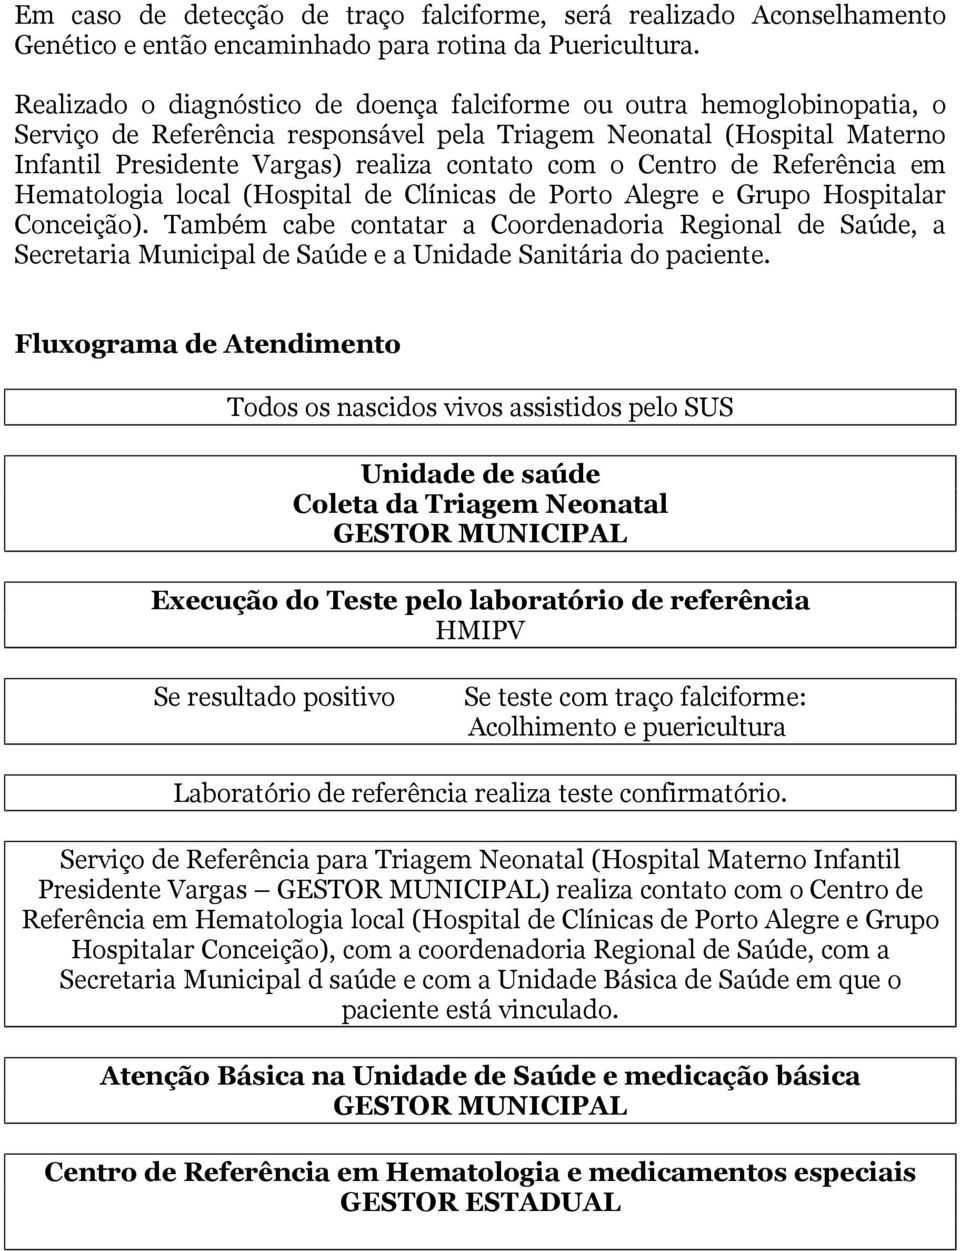 Centro de Referência em Hematologia local (Hospital de Clínicas de Porto Alegre e Grupo Hospitalar Conceição).